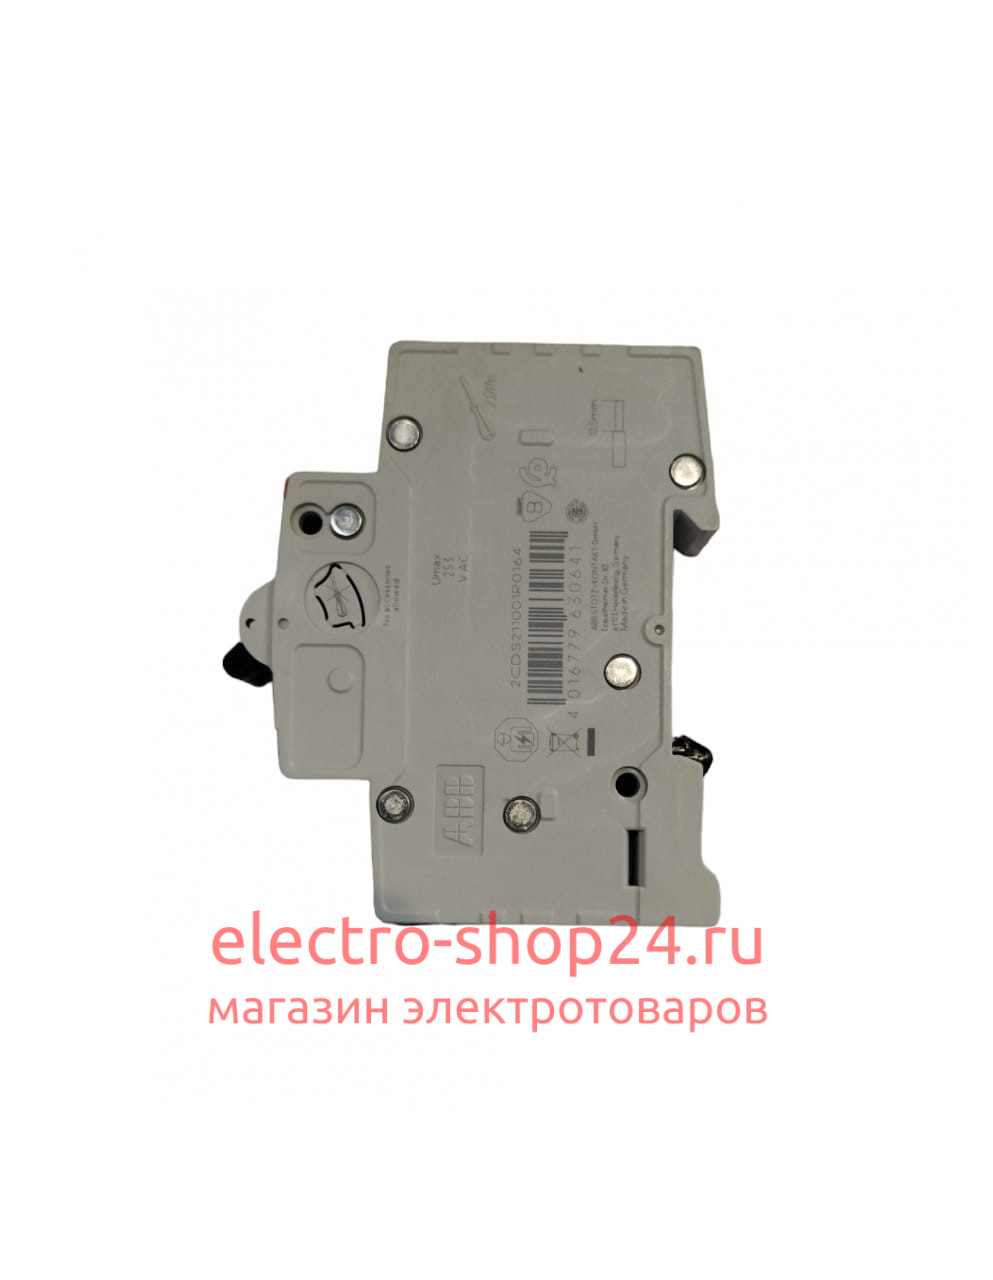 SH201 C25 Автоматический выключатель 1-полюсный 25А 6кА (хар-ка C) ABB 2CDS211001R0254 2CDS211001R0254 - магазин электротехники Electroshop